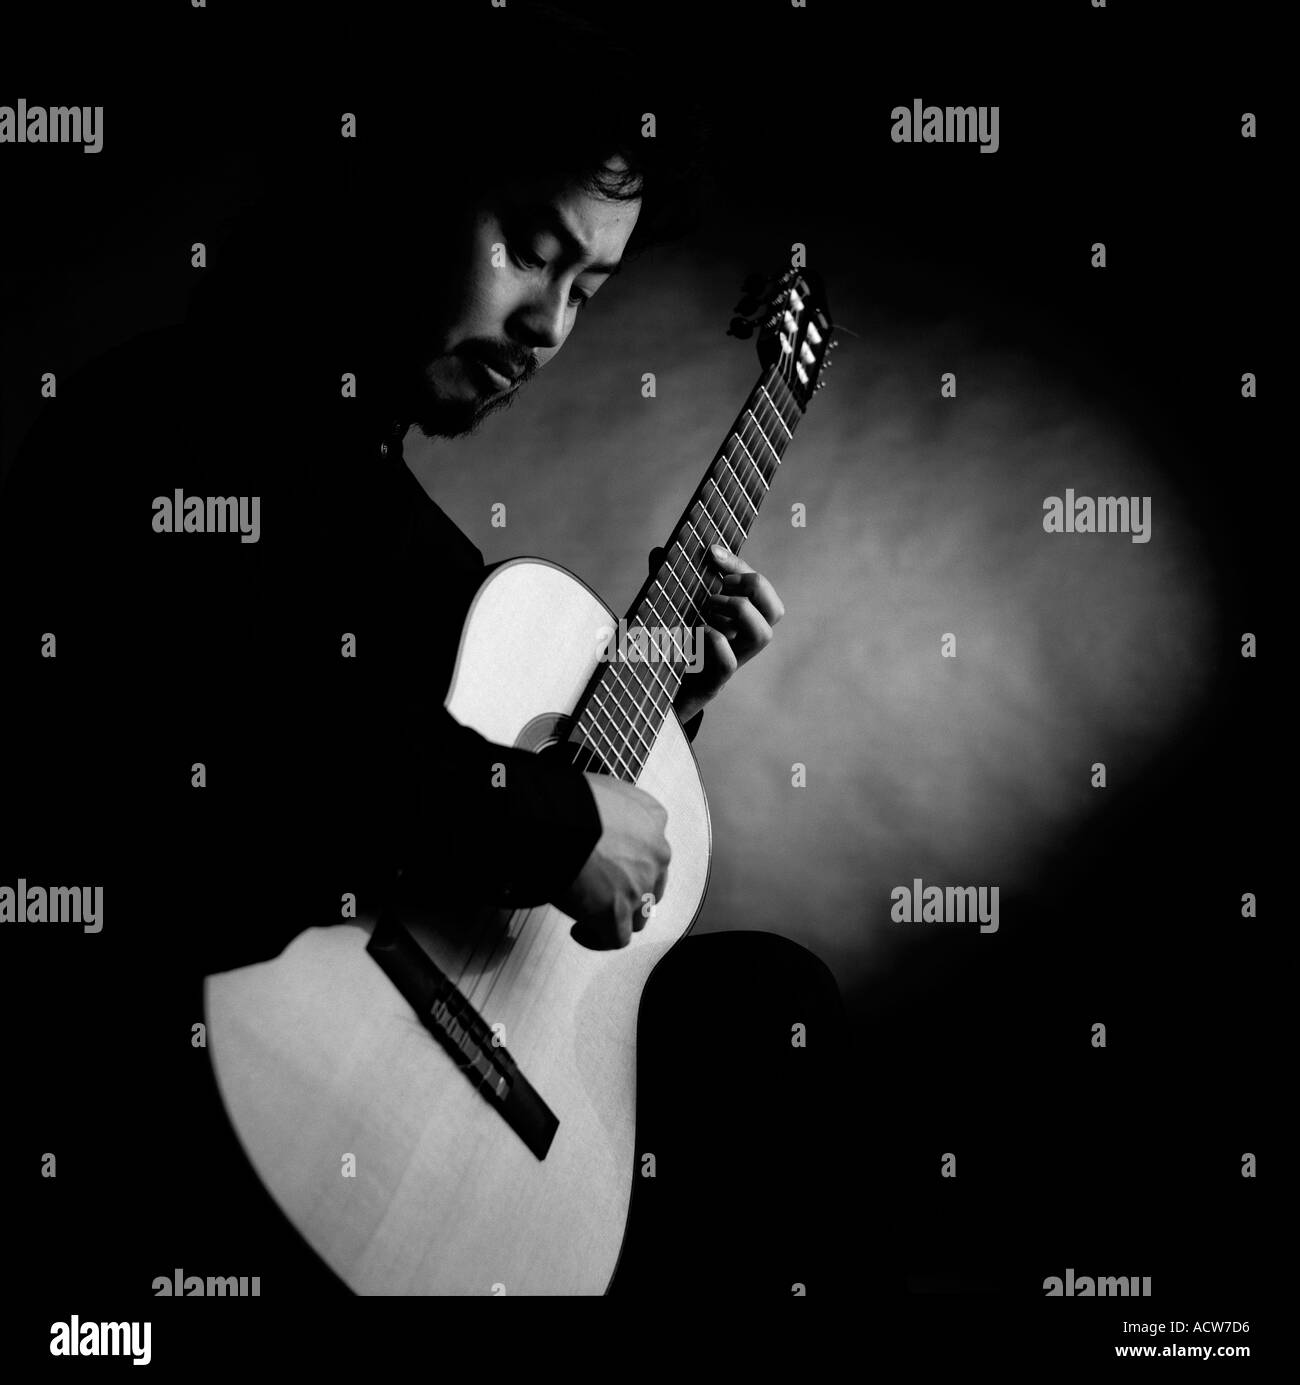 Portrait noir et blanc de guitariste classique concert Masa Ito dans studio fond noir Banque D'Images